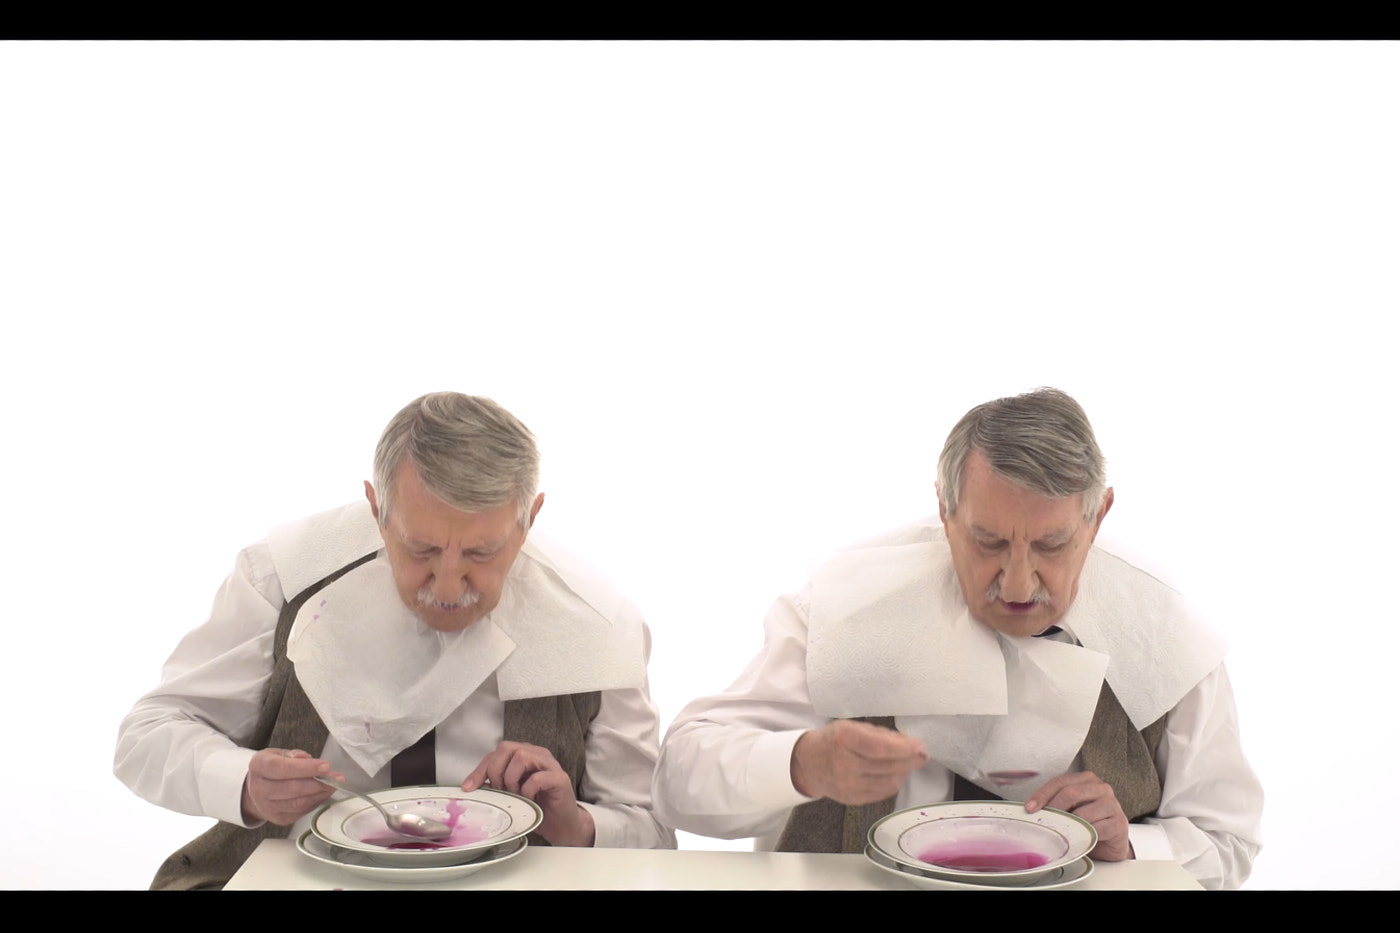 Zwei Männer mit grauen Haaren und Schnauzbärten an einem Tisch. Beide tragen weiße Hemden und Papierservietten um den Hals. Sie sehen sich sehr ähnlich, wie Zwillinge. Sie essen pinke Suppe aus Tellern vor sich.